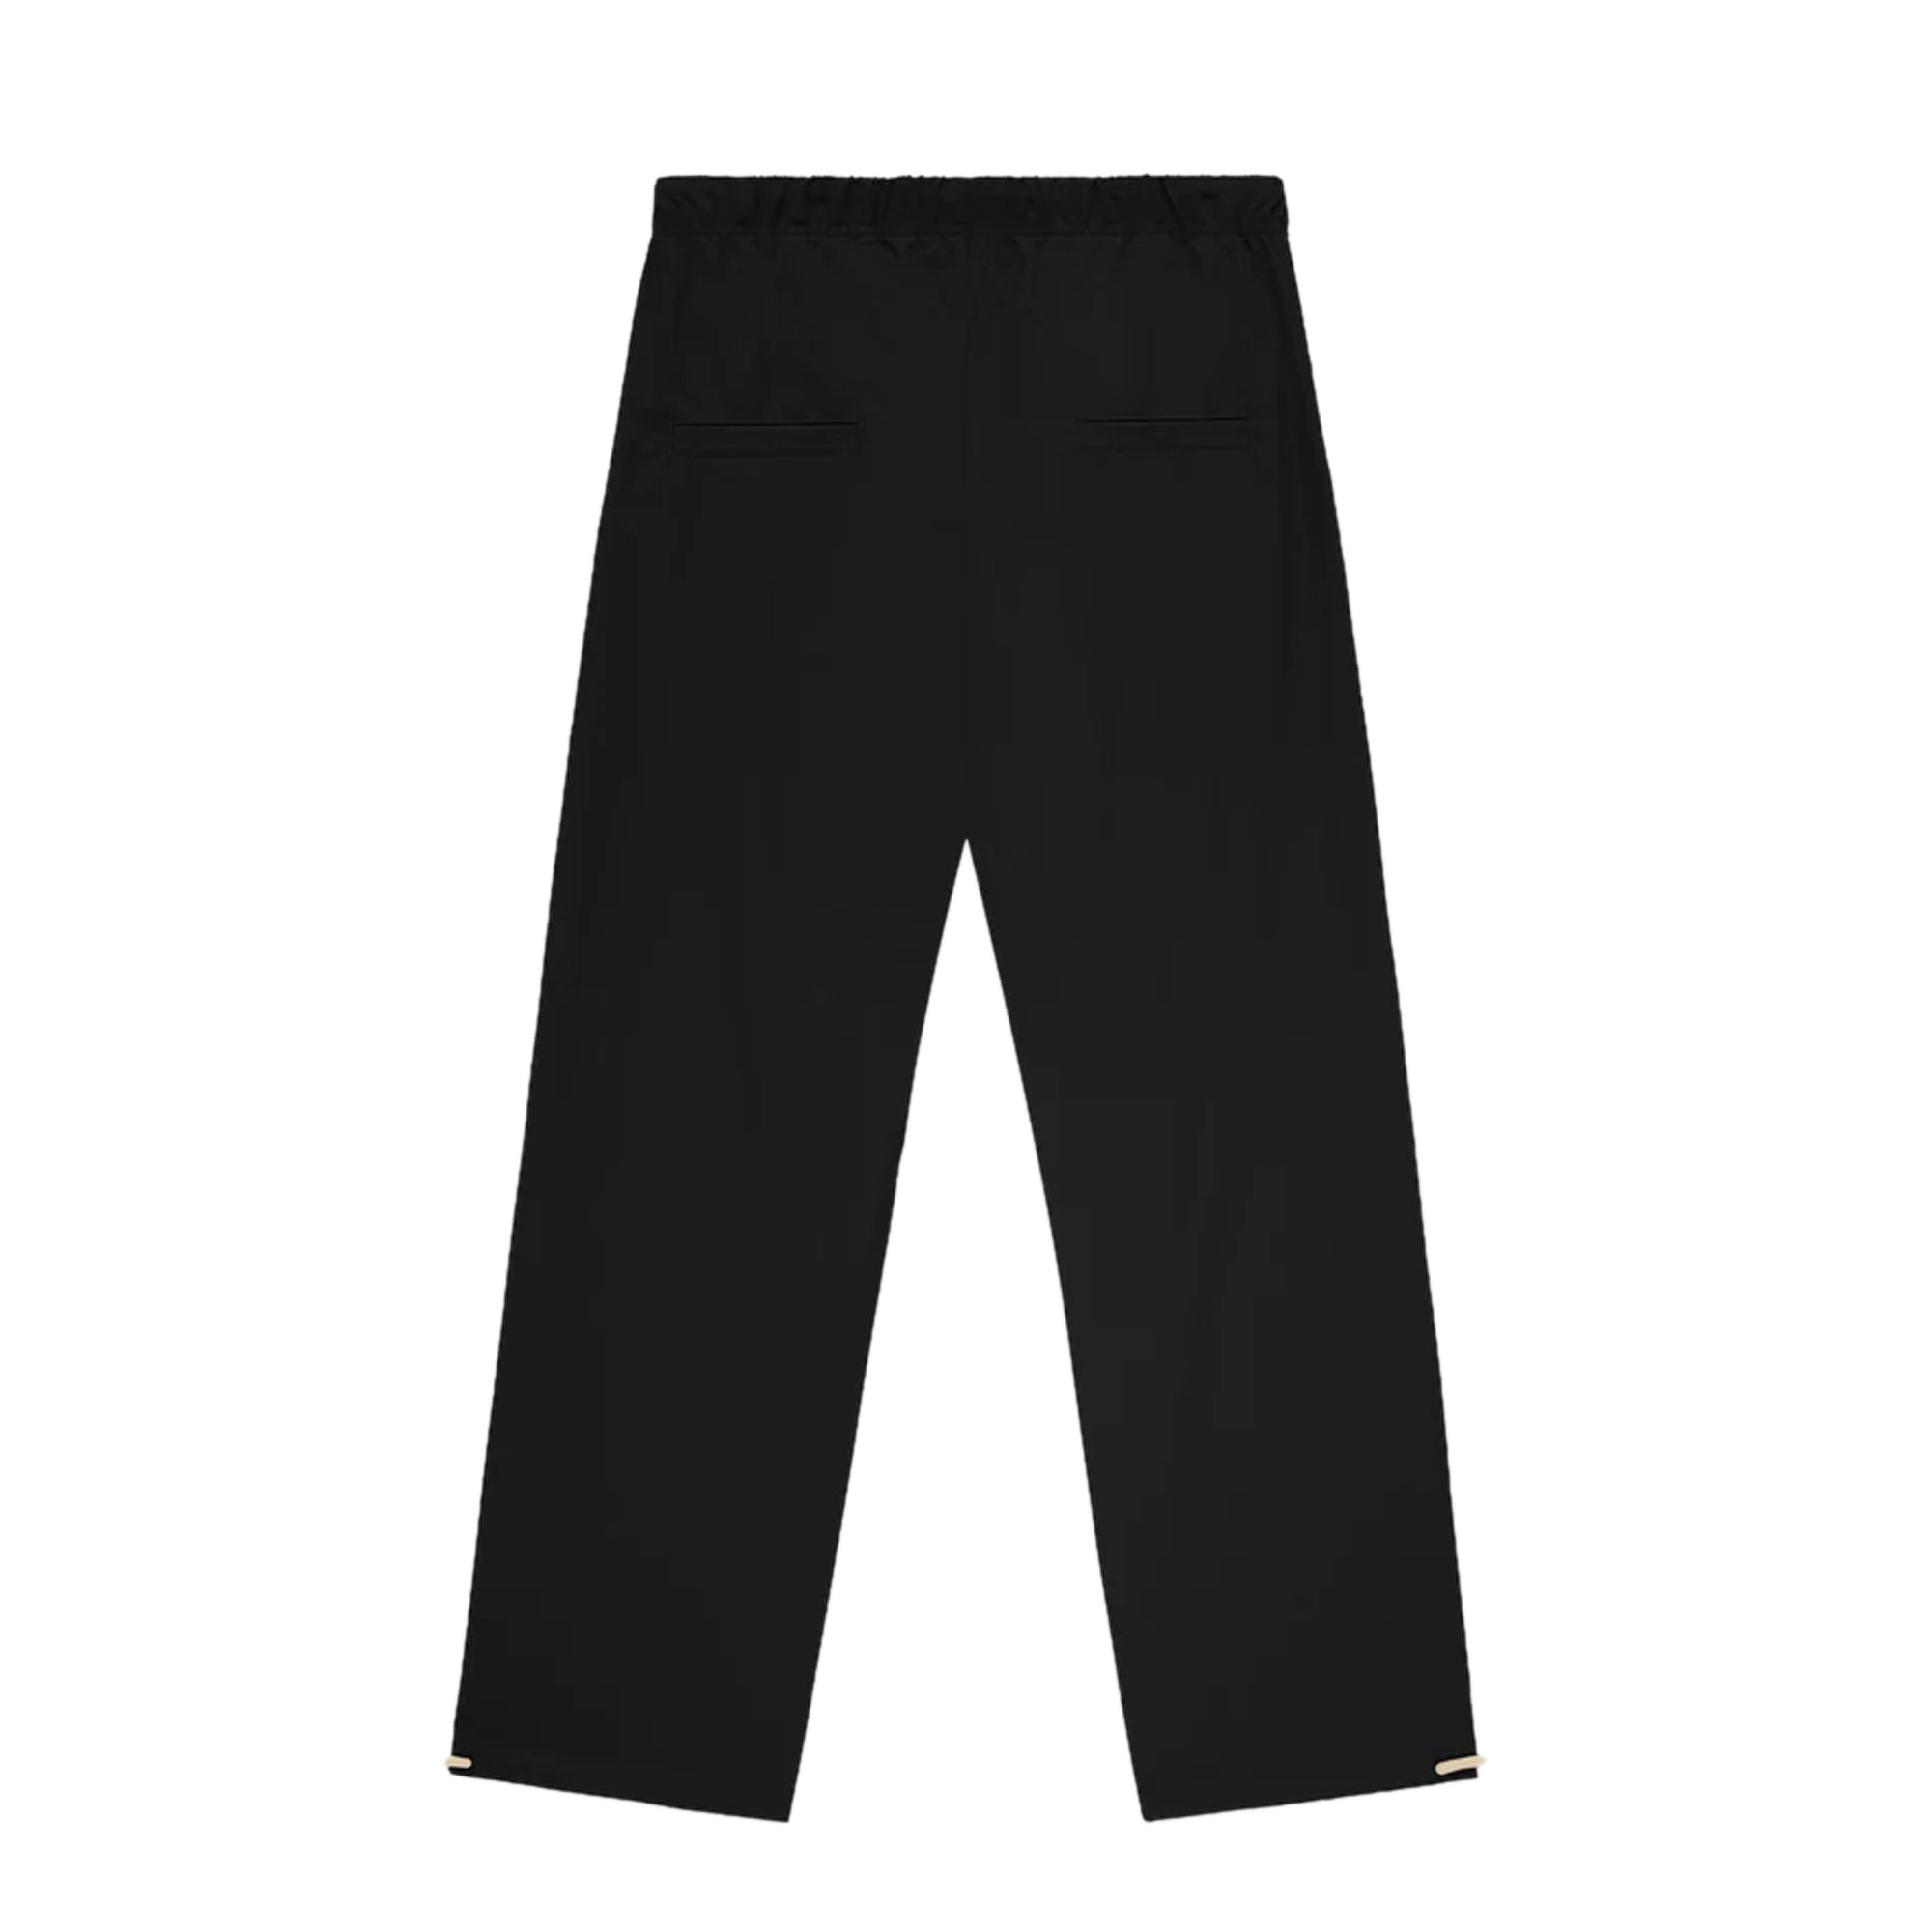 Buy Deepee Twister Knit Pants - Yoga Pants, Kurti Pants, Leisure Wear –  Deepee Online Store